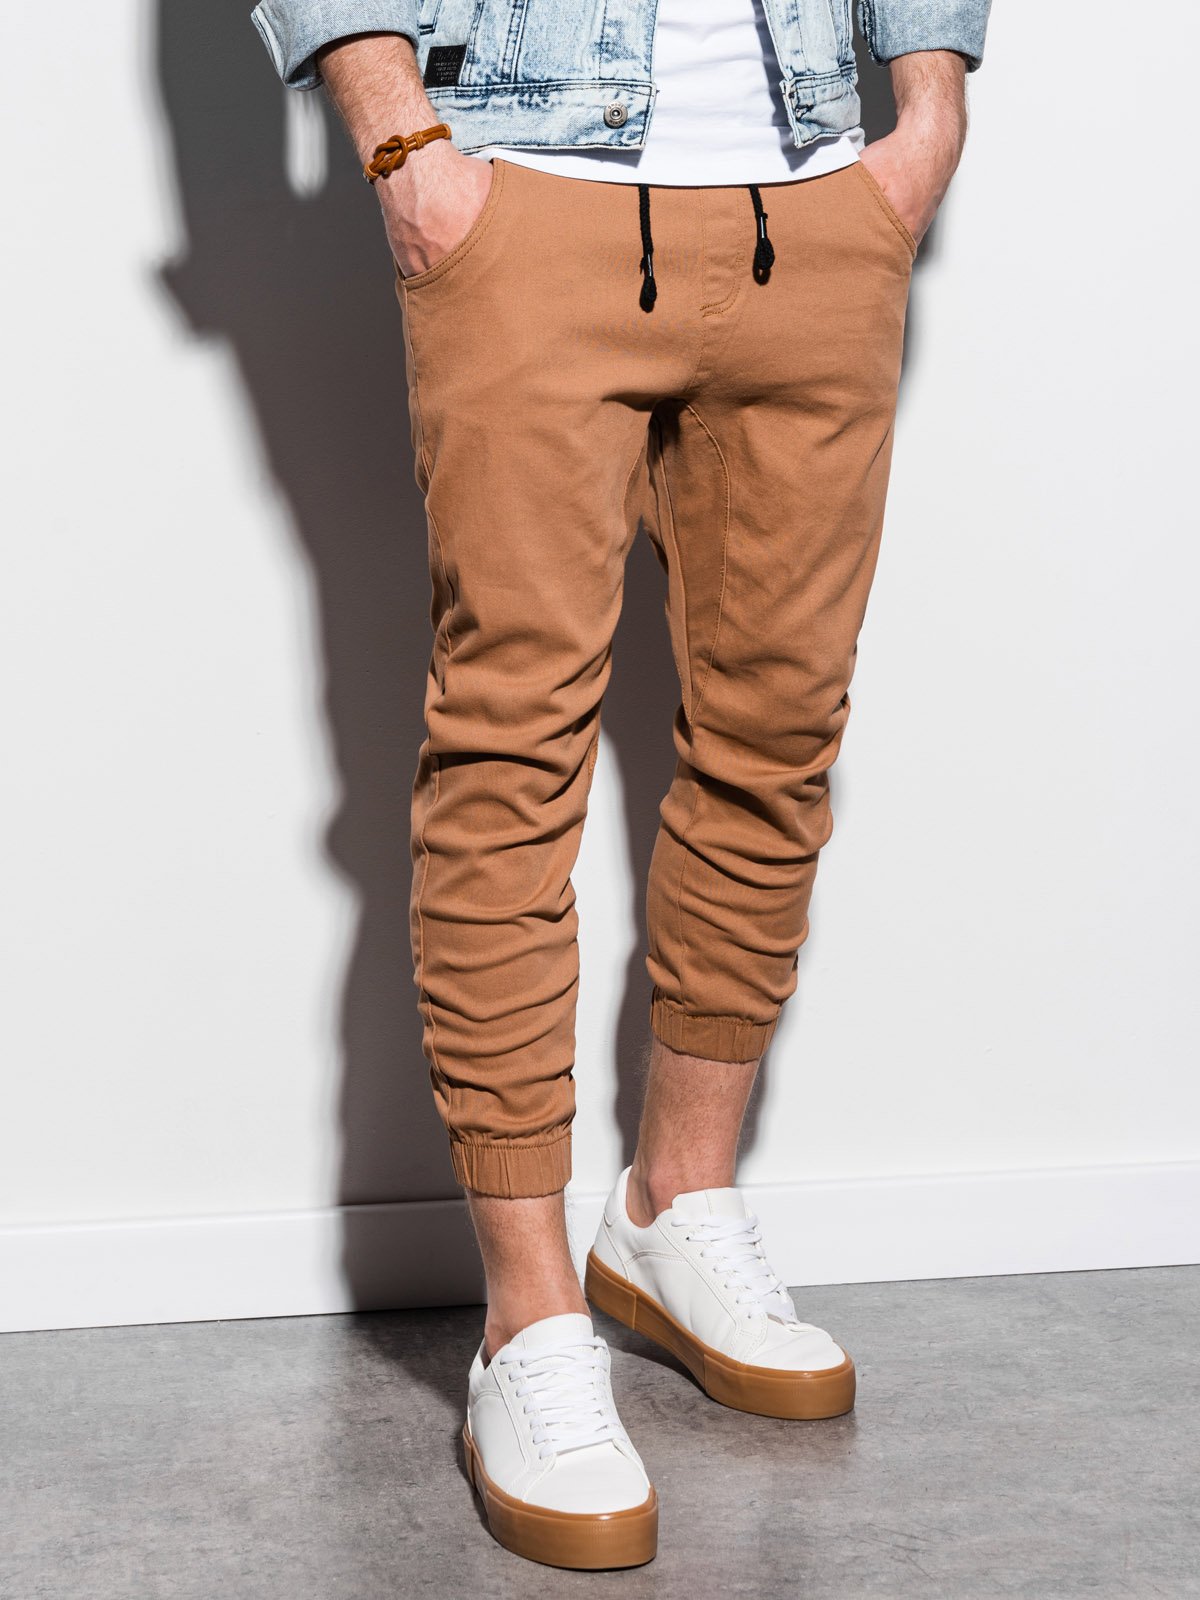 Men's pants joggers P731 - beige | MODONE wholesale - Clothing For Men